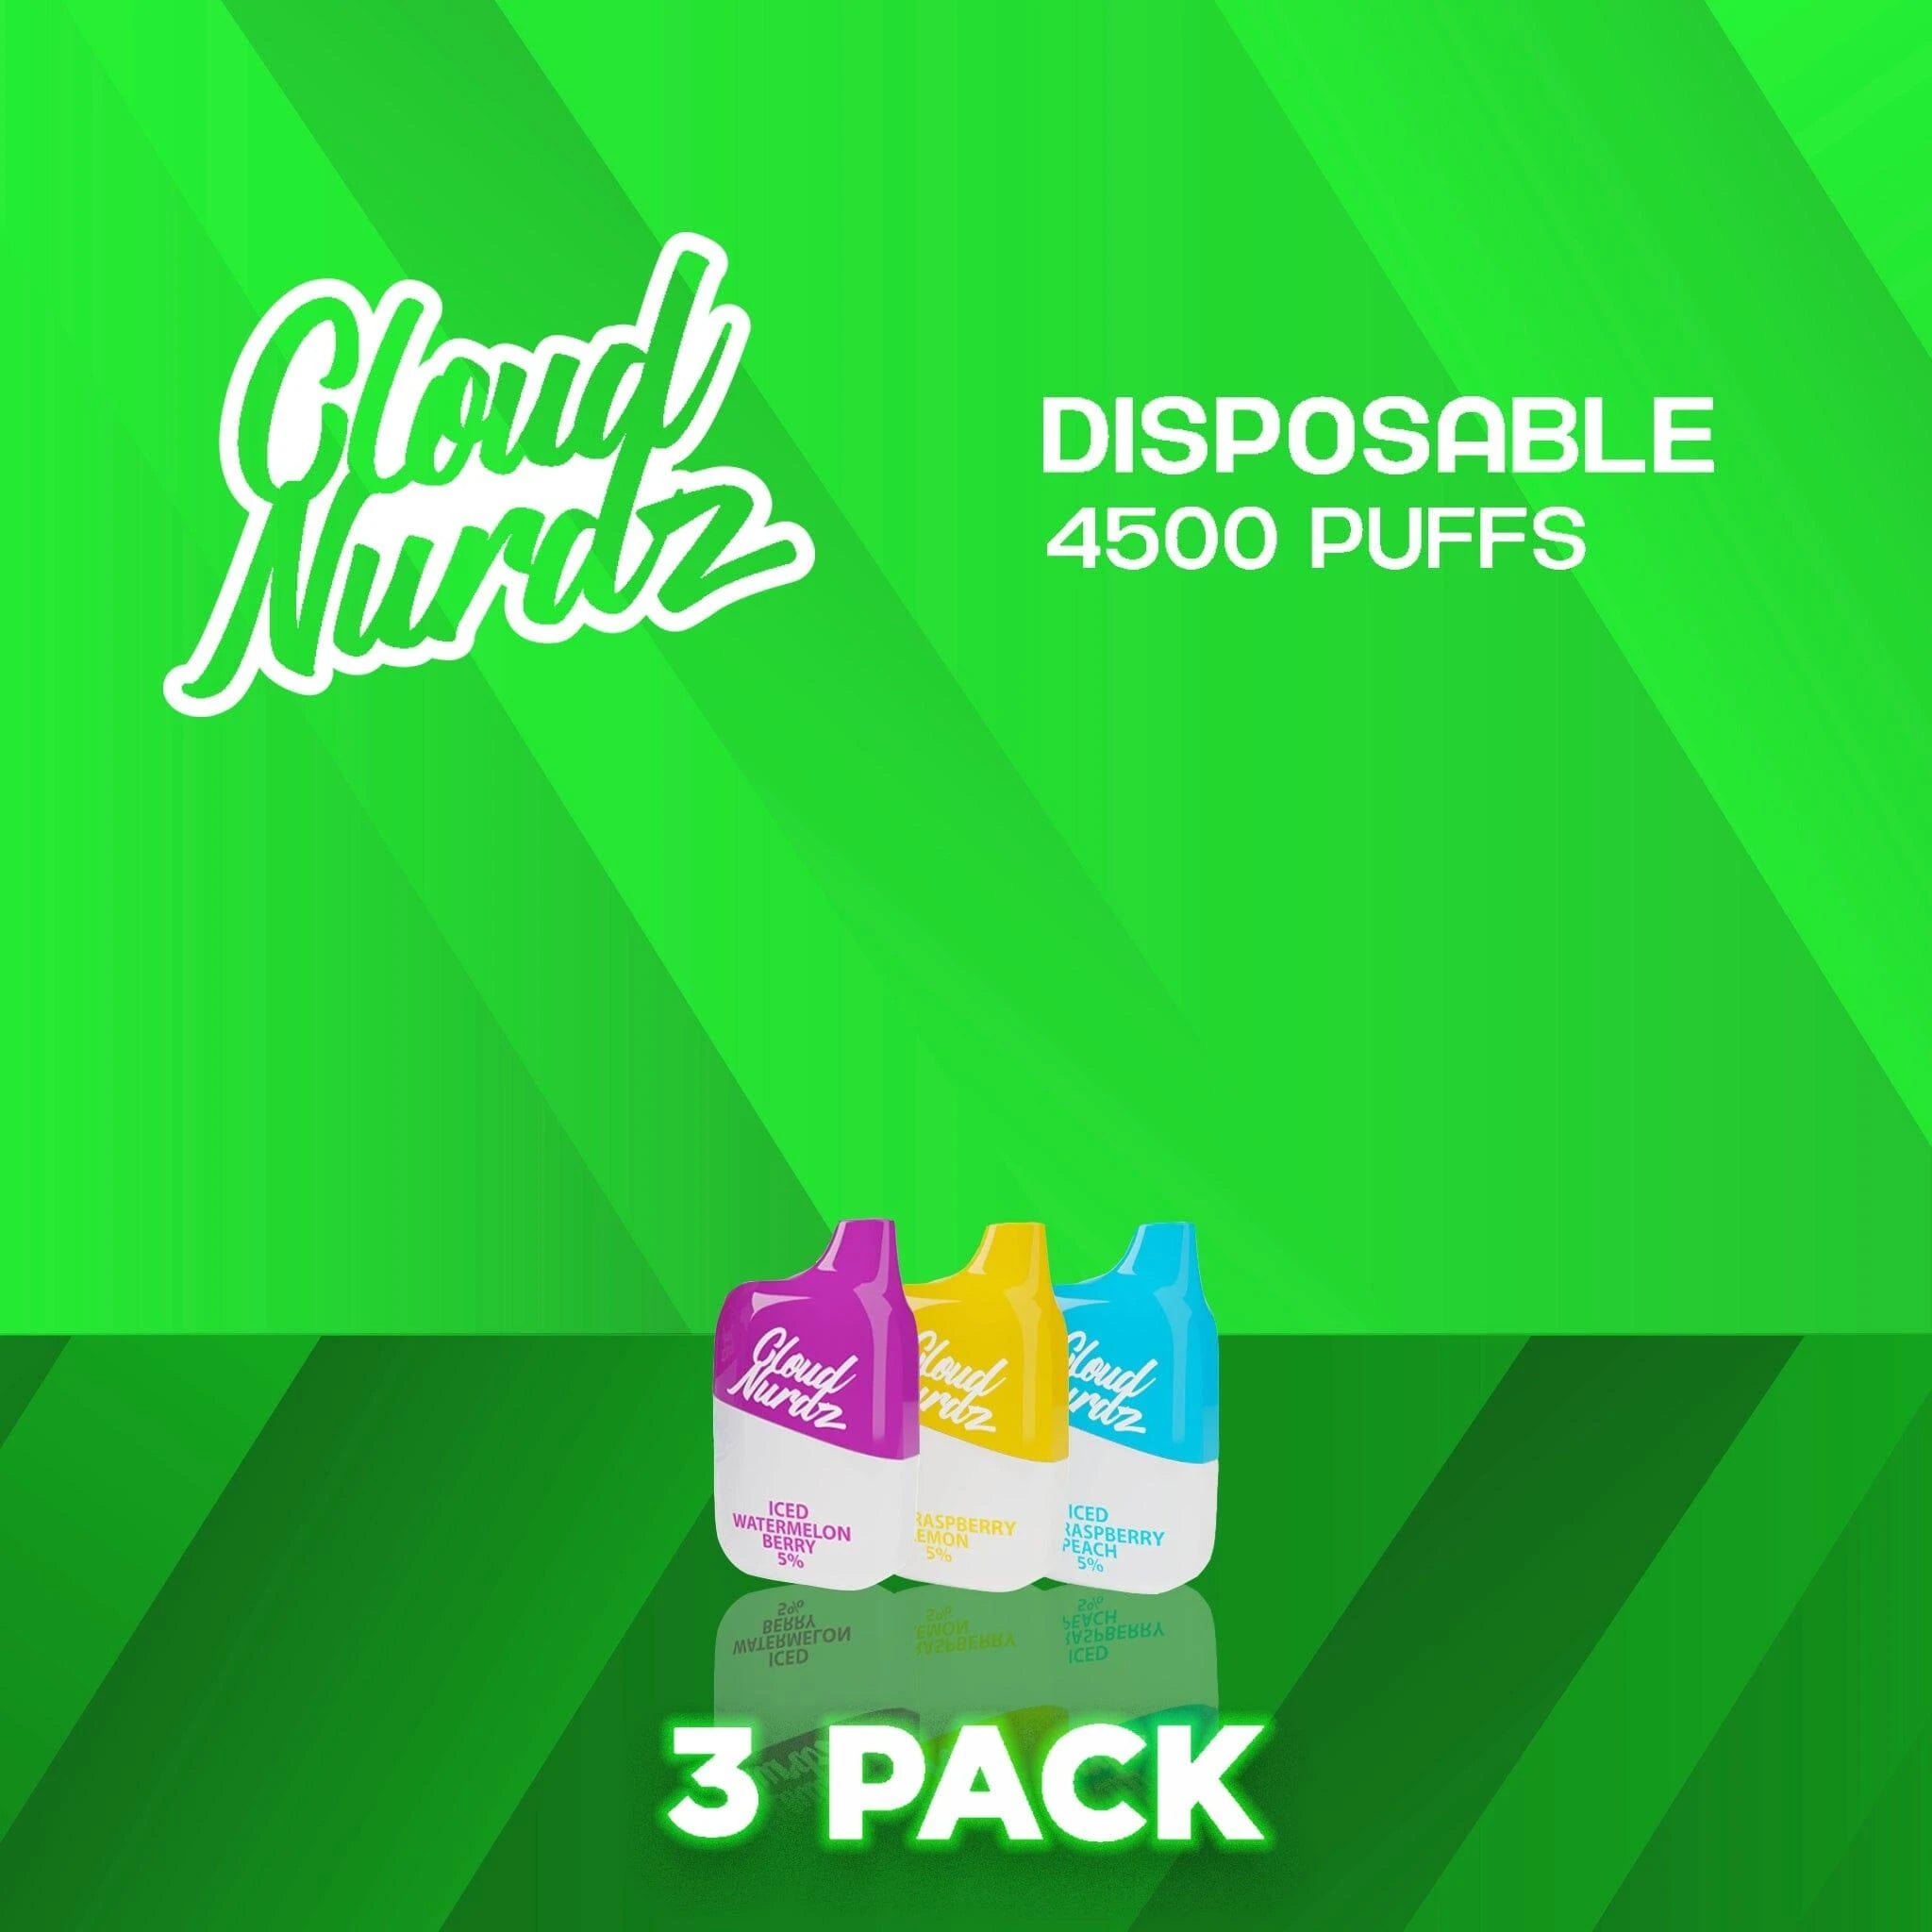 Cloud Nurdz 4500 Puffs Disposable Vape - 3 Pack